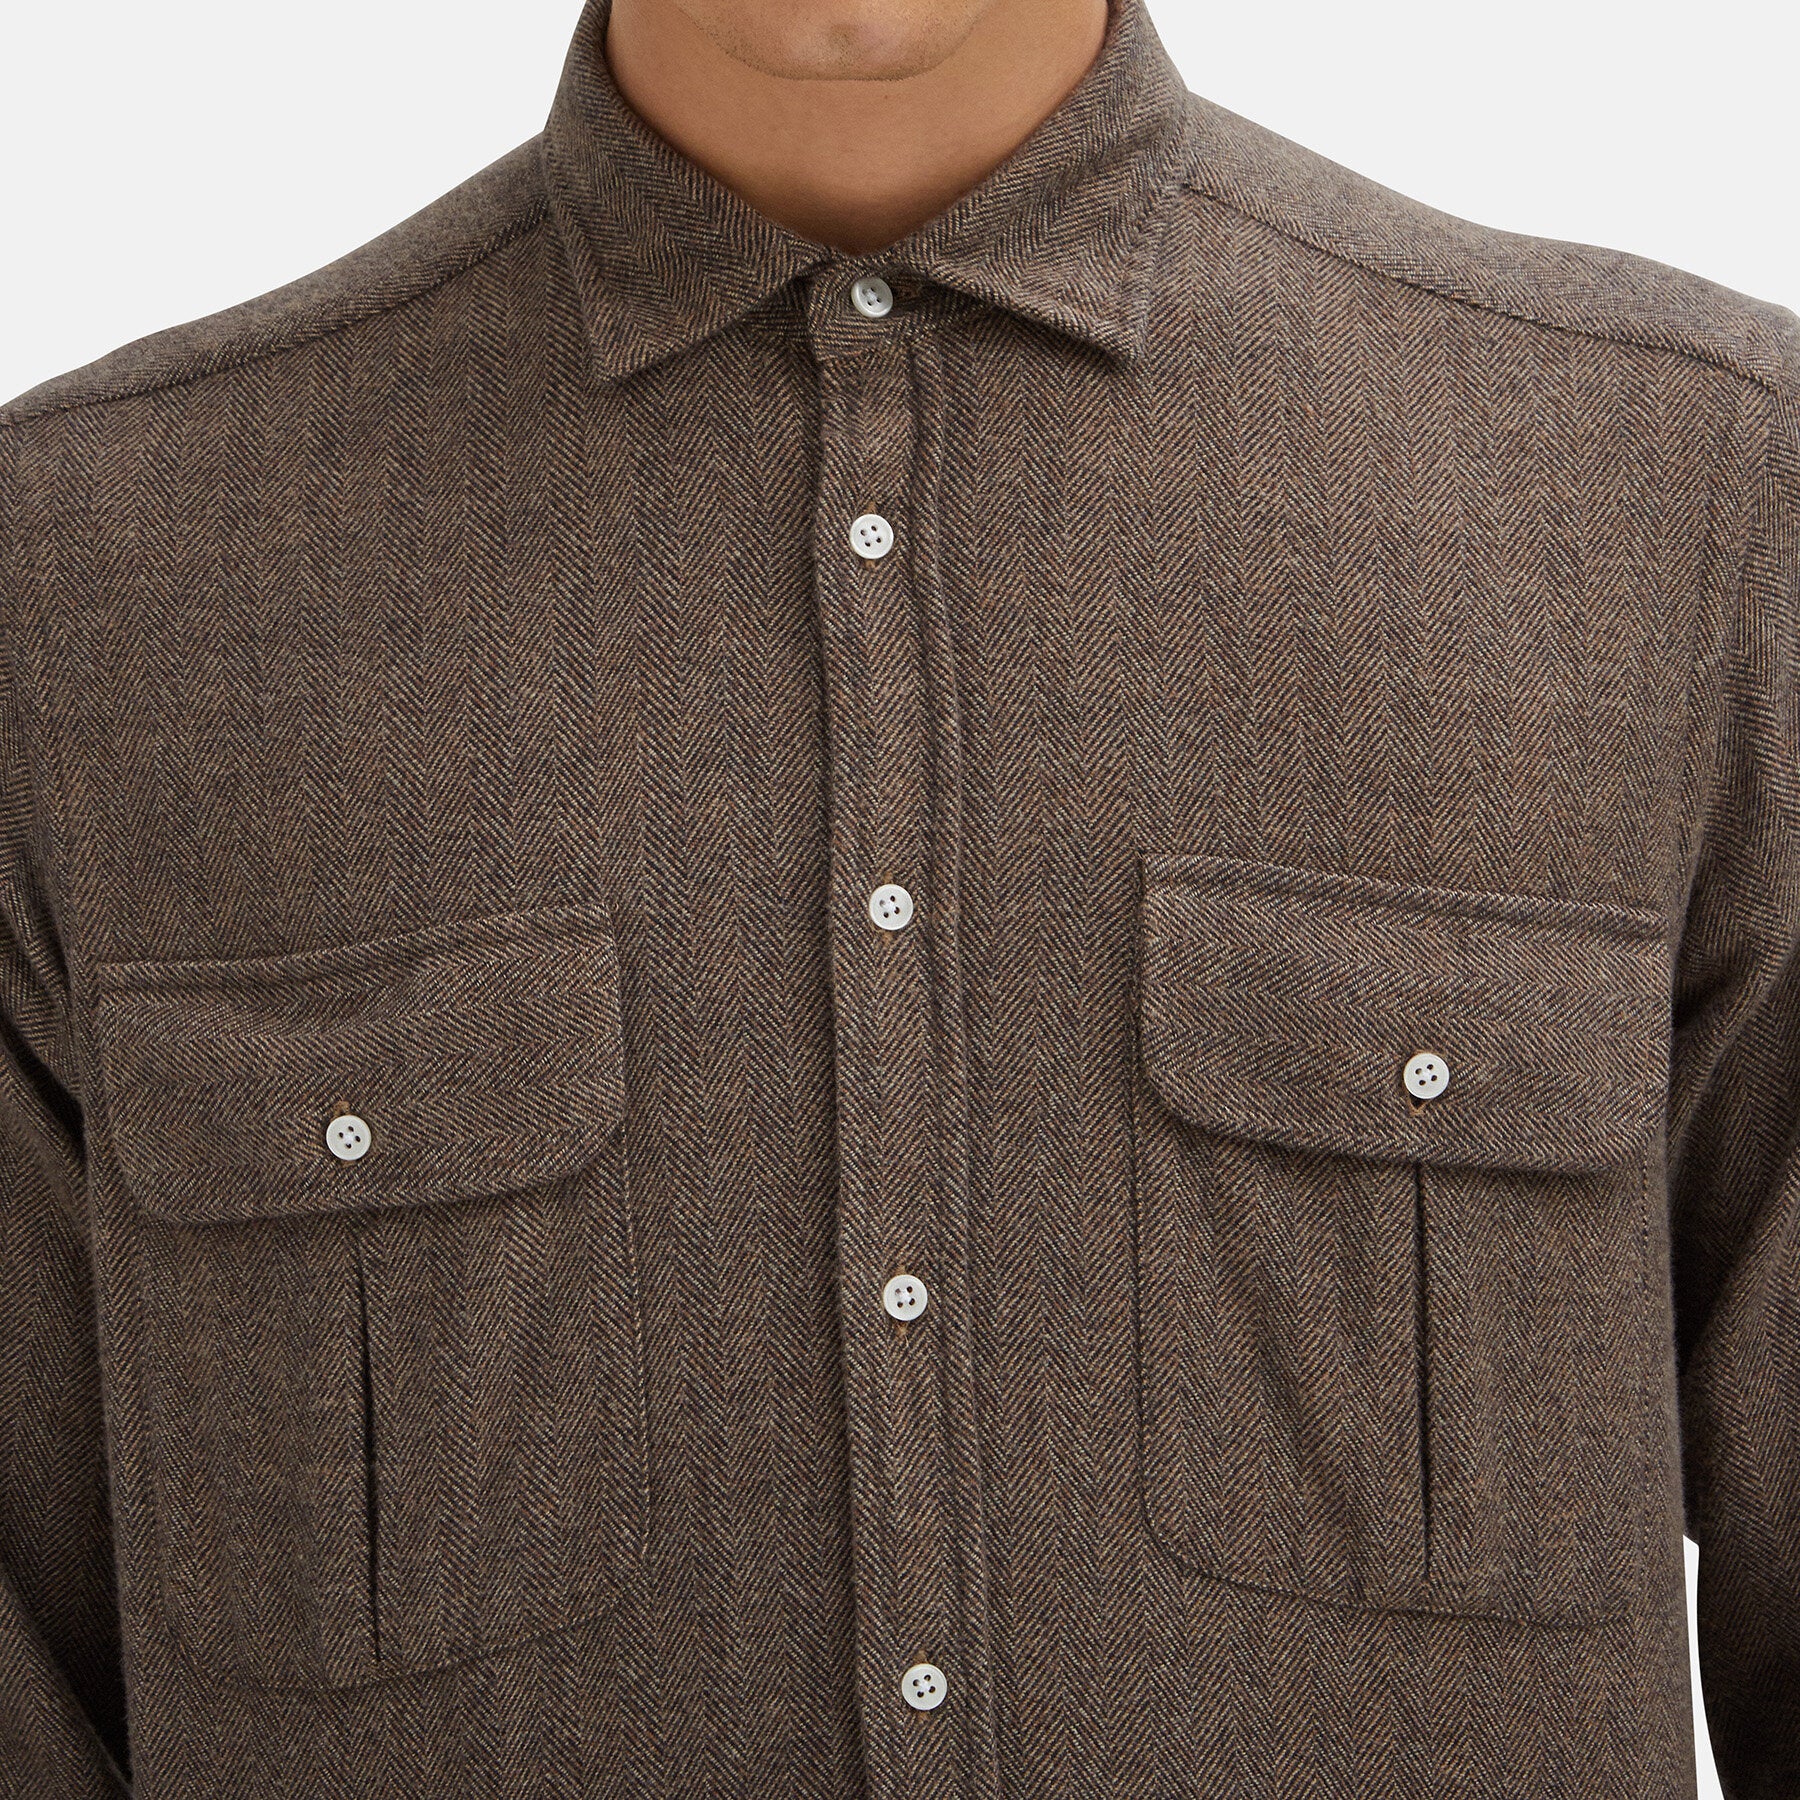 Bradford shirt with herringbone pattern